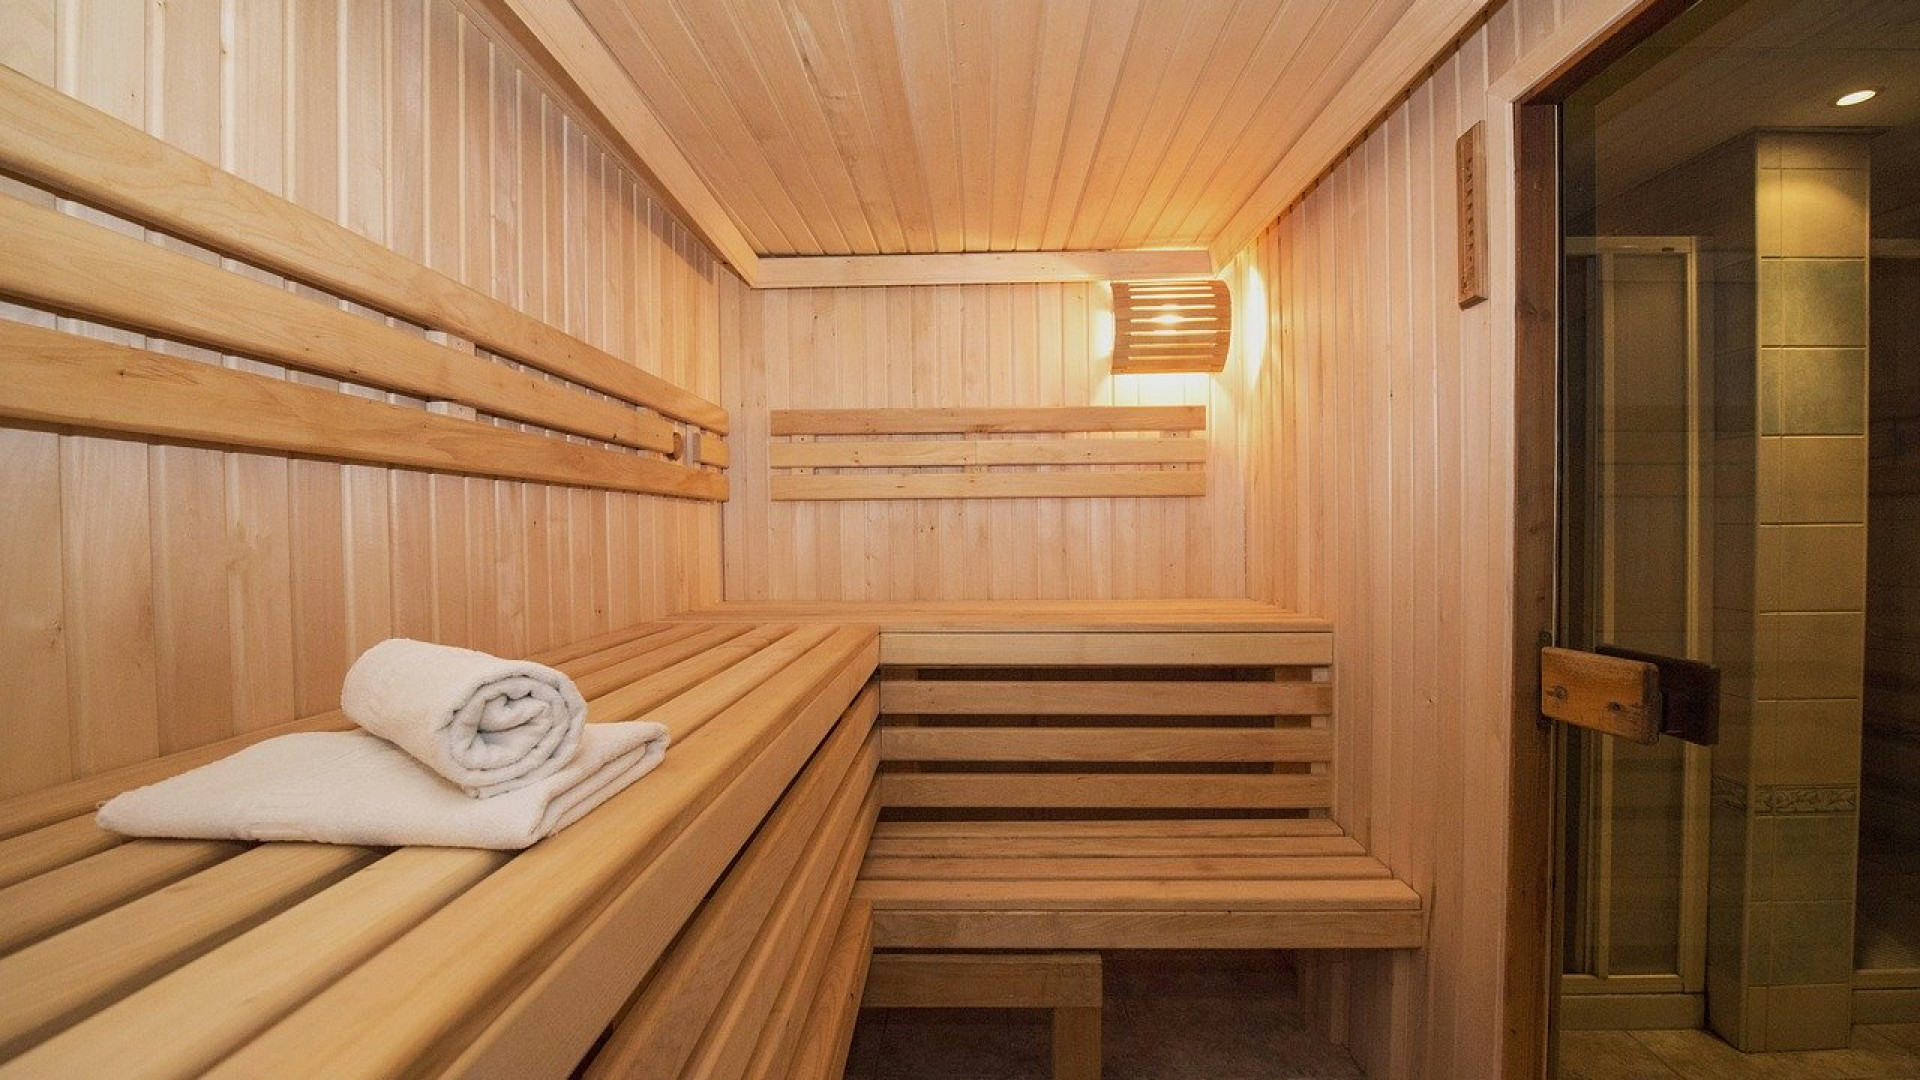 Les avantages d'un sauna massif pour votre bien-être